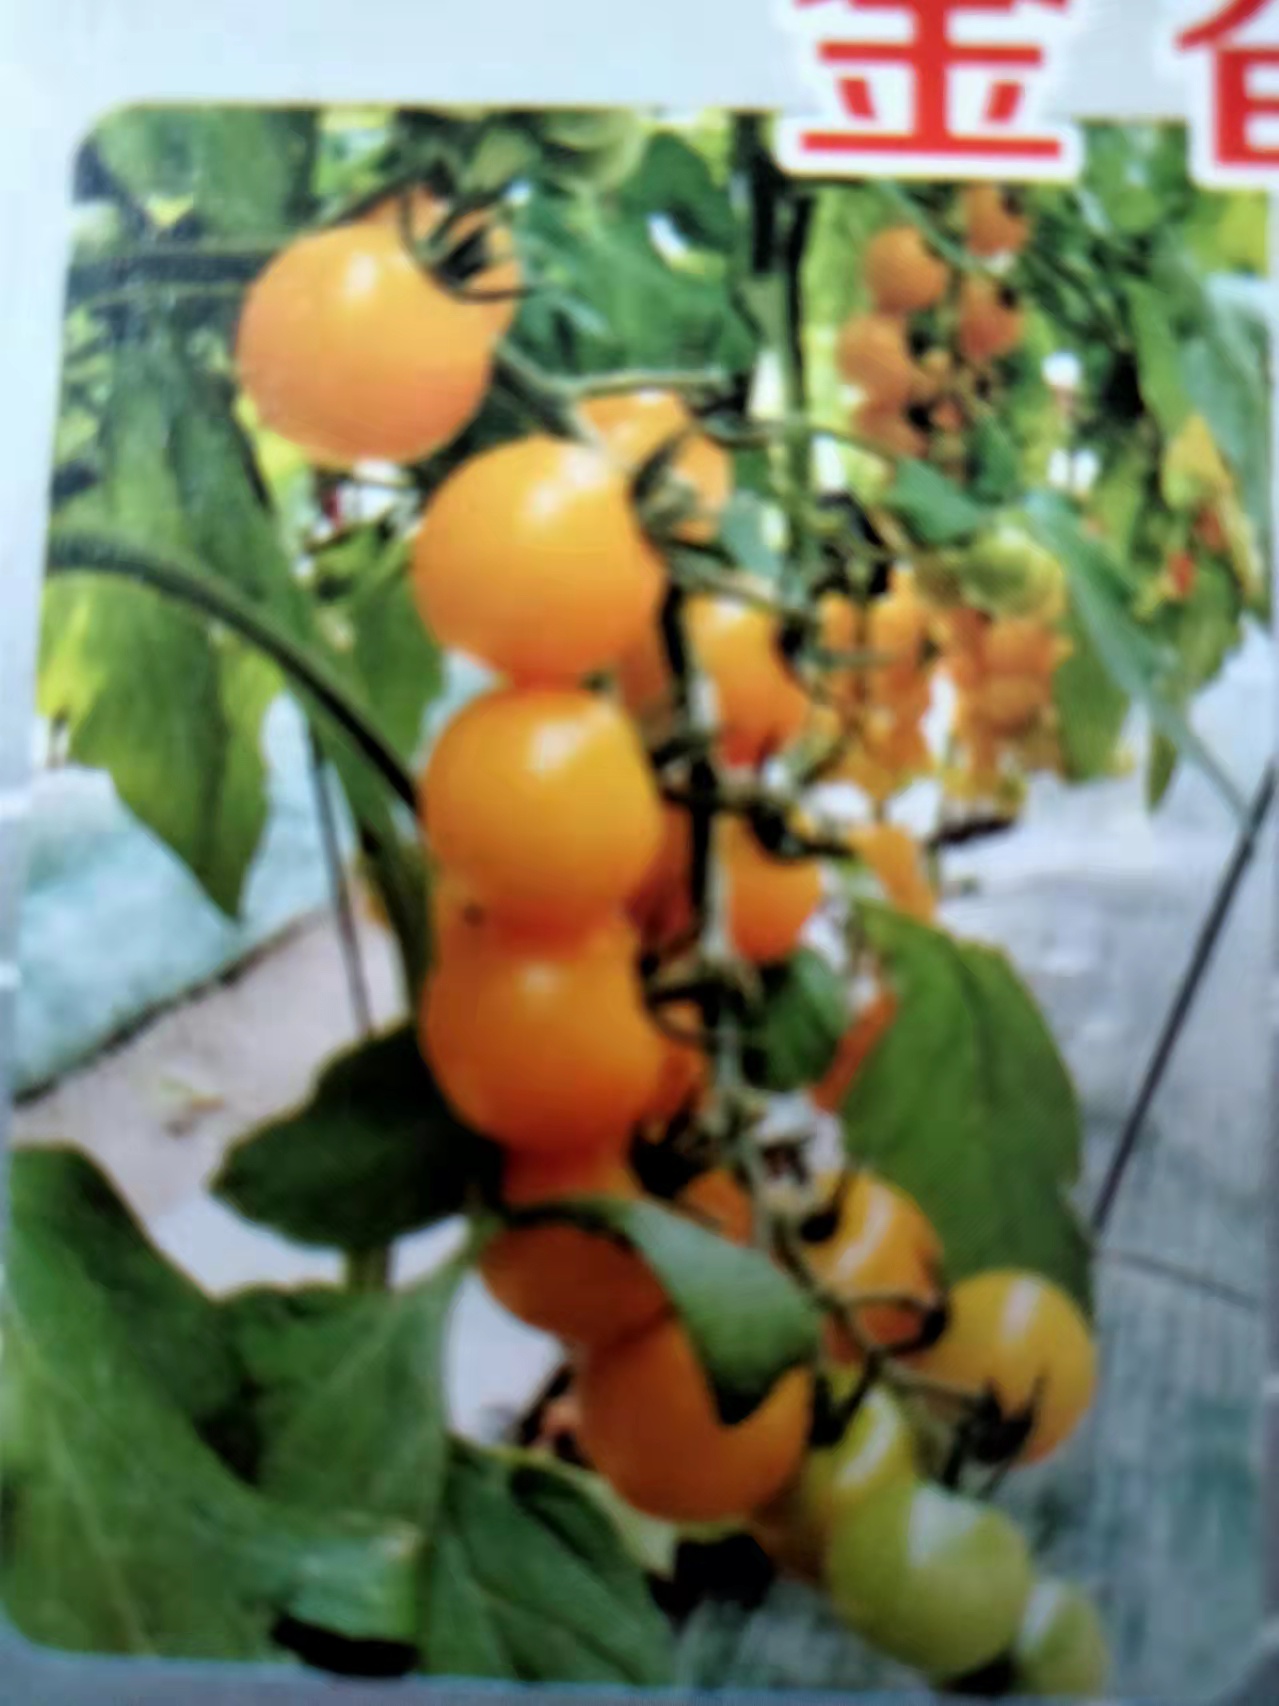 百斯特口感番茄 金香玉黄色樱桃番茄 圣女果种子苗子 香气浓郁 单果重20克